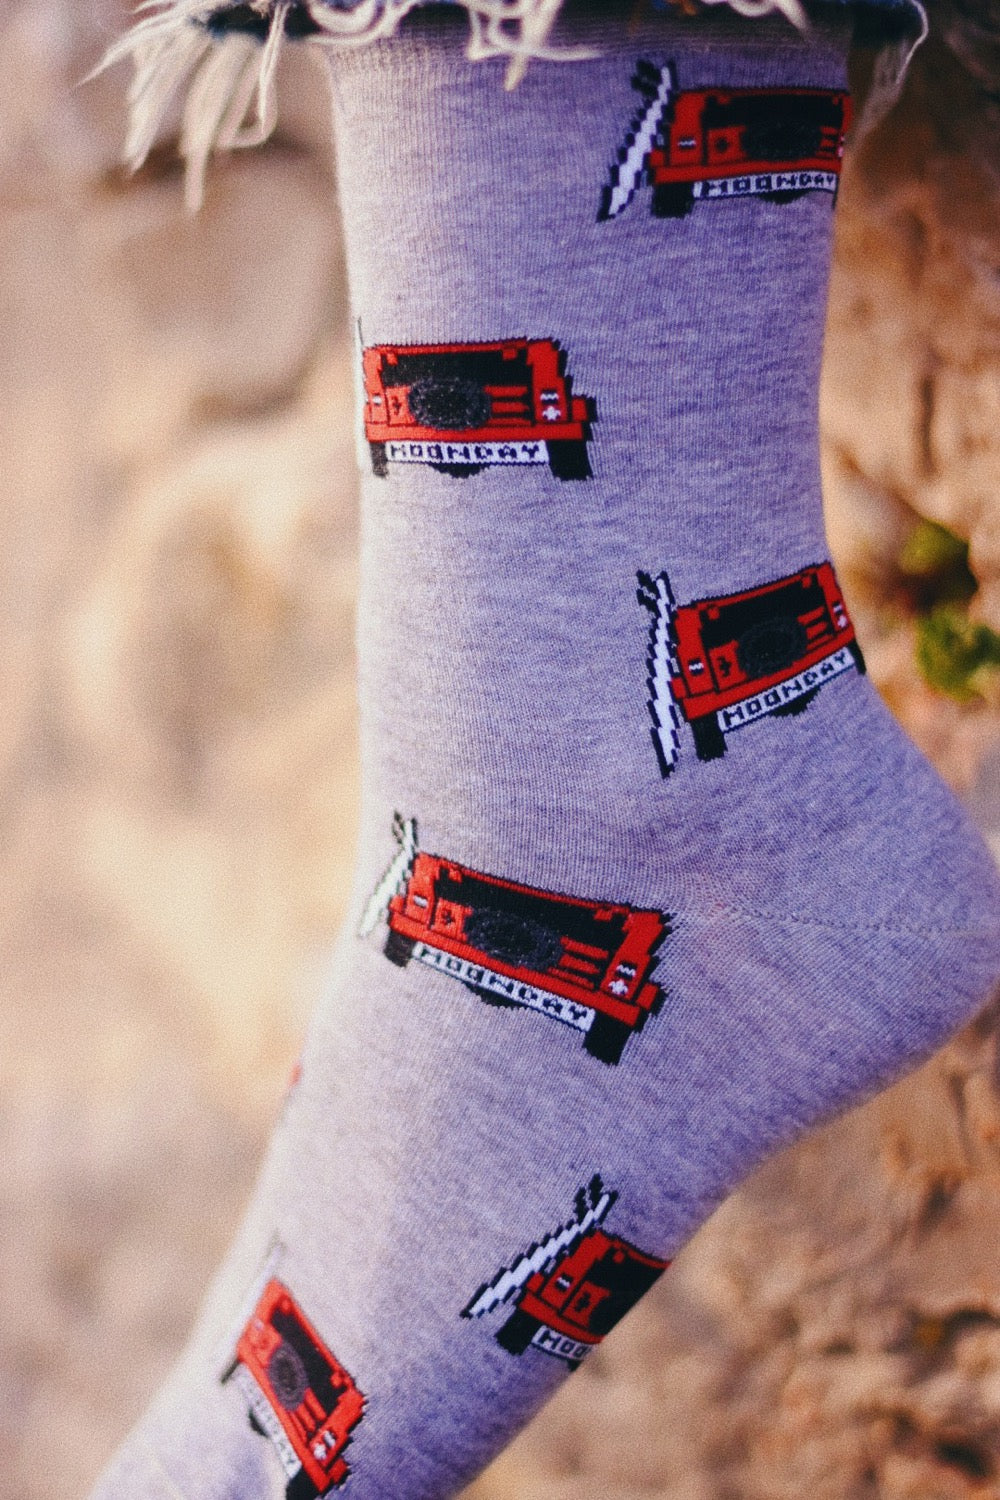 Jeep socks